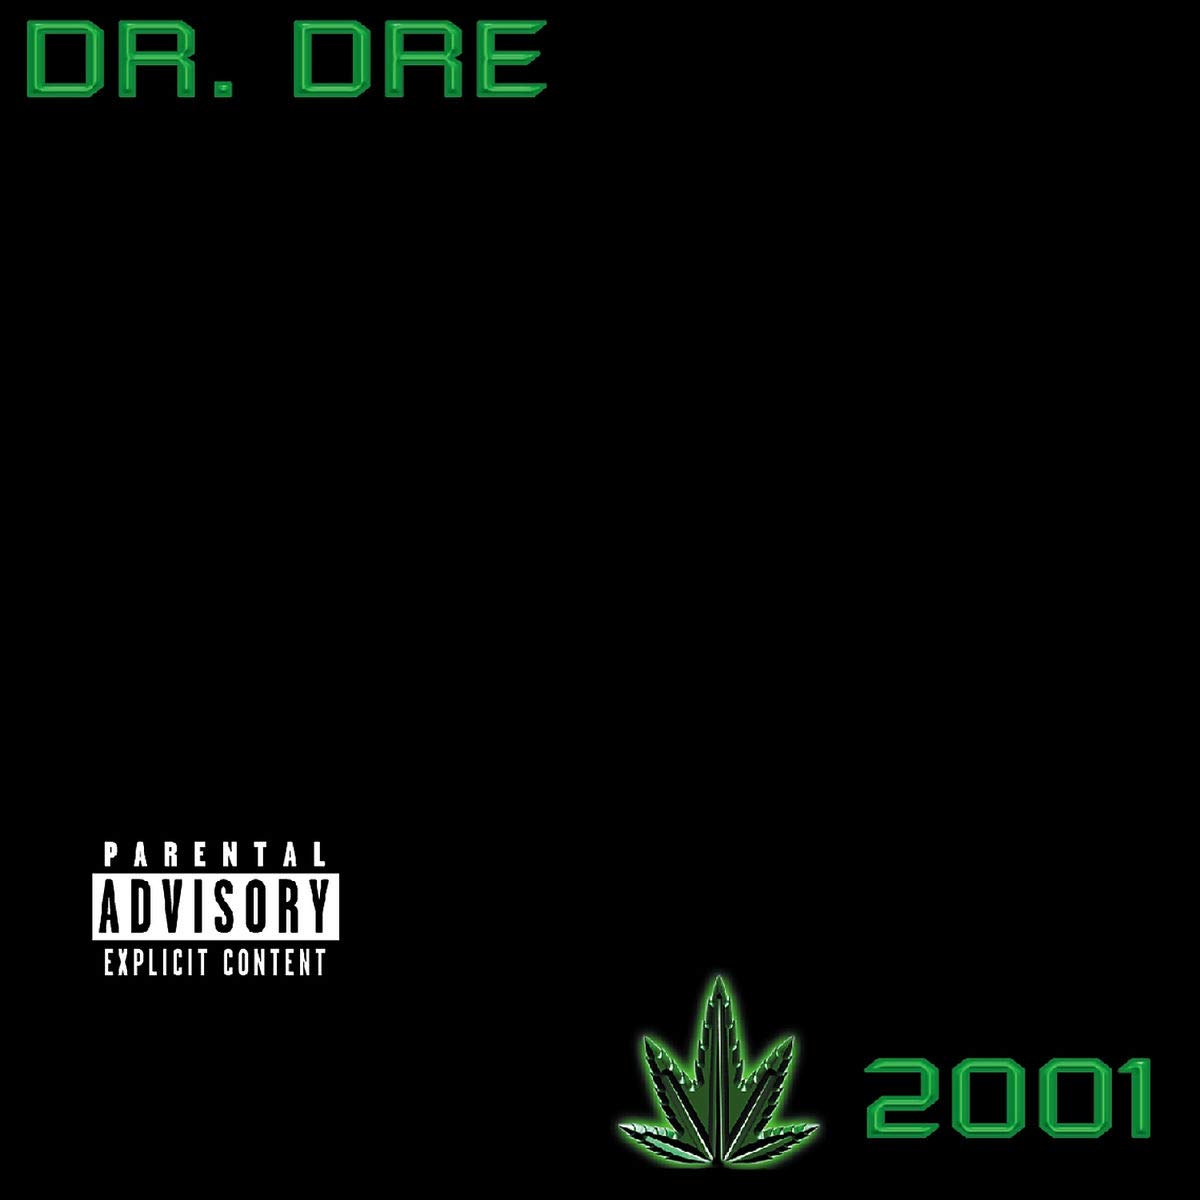 DR. DRE - 2001 (2LP)